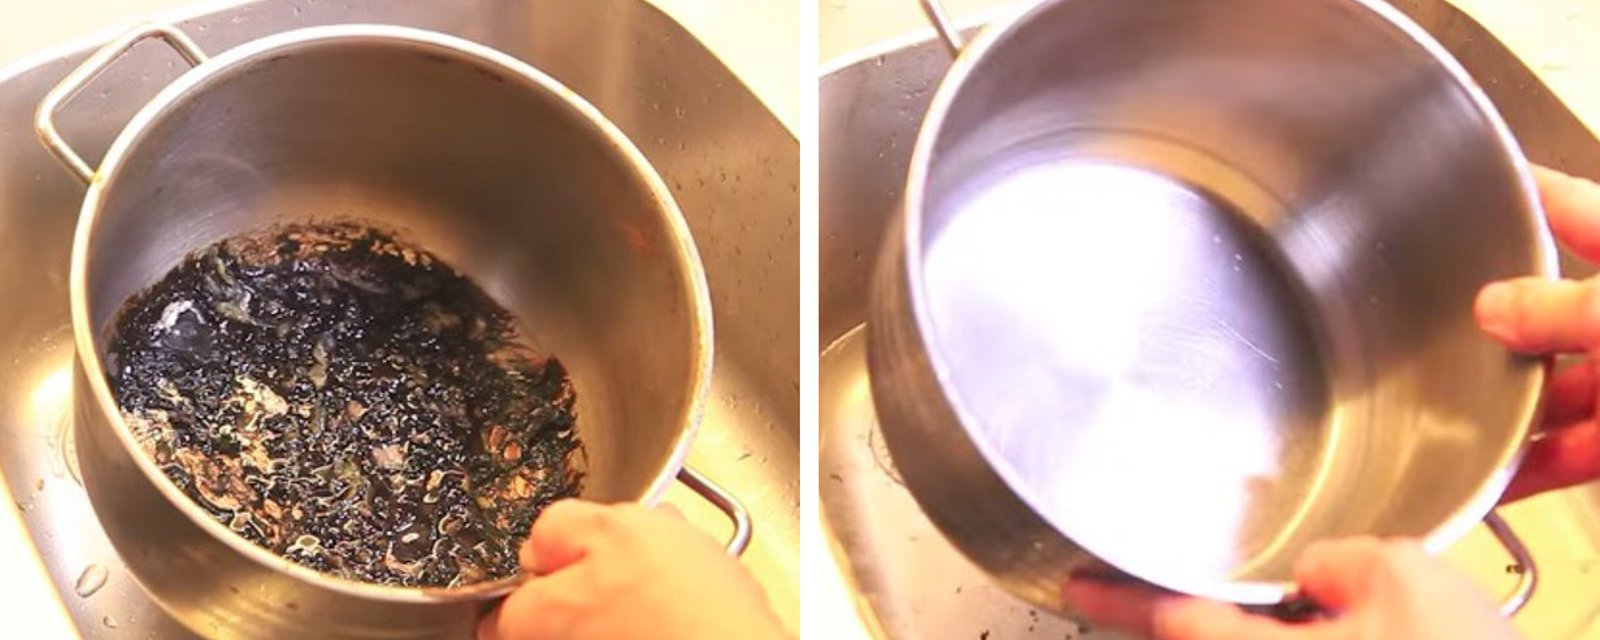 J'ai trouvé un truc étrange sur le net pour nettoyer ma casserole brulée! Et bien il fonctionne si bien, que je n'ai même pas eu à frotter! 